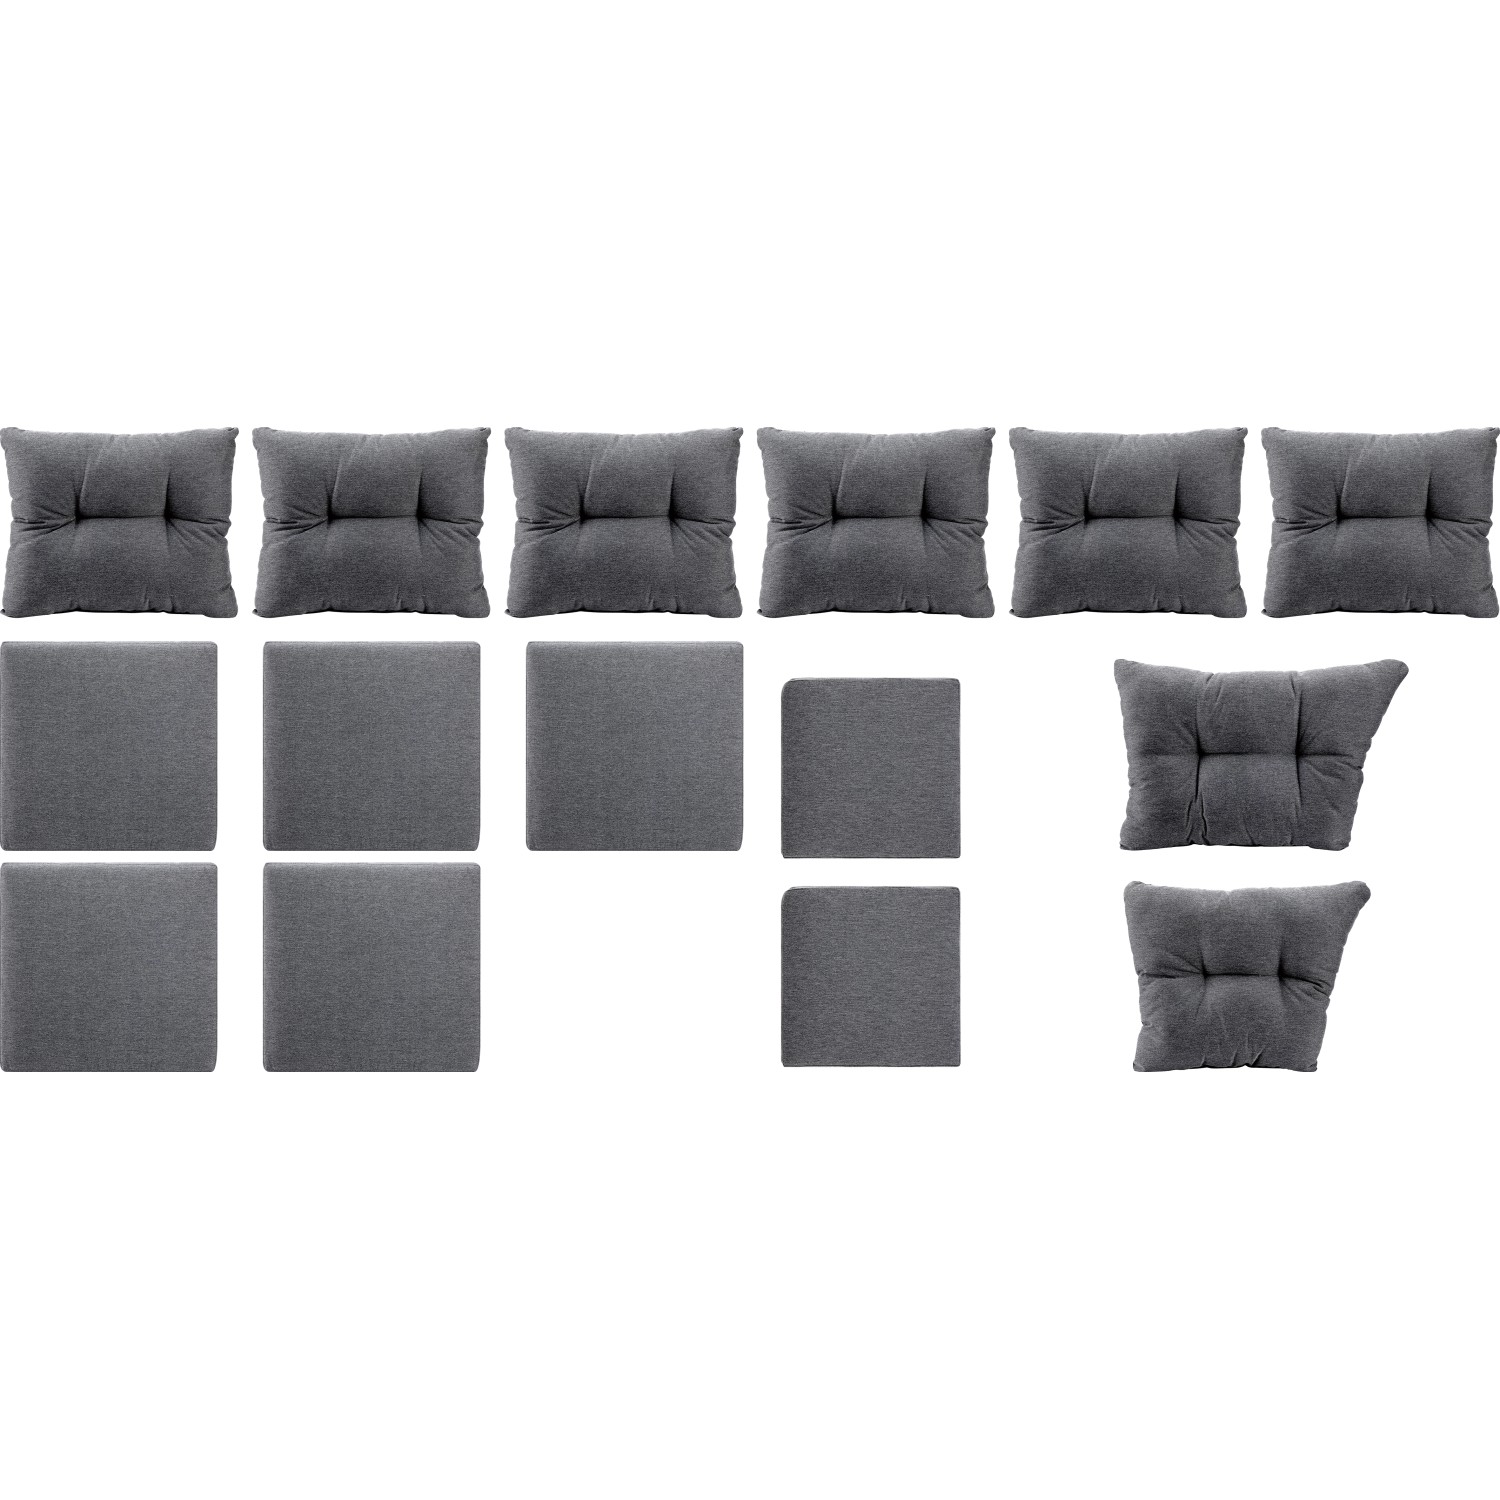 Ersatz-)Kissenhüllen-Set für Elfrida Eck-Dining-Set Grau kaufen